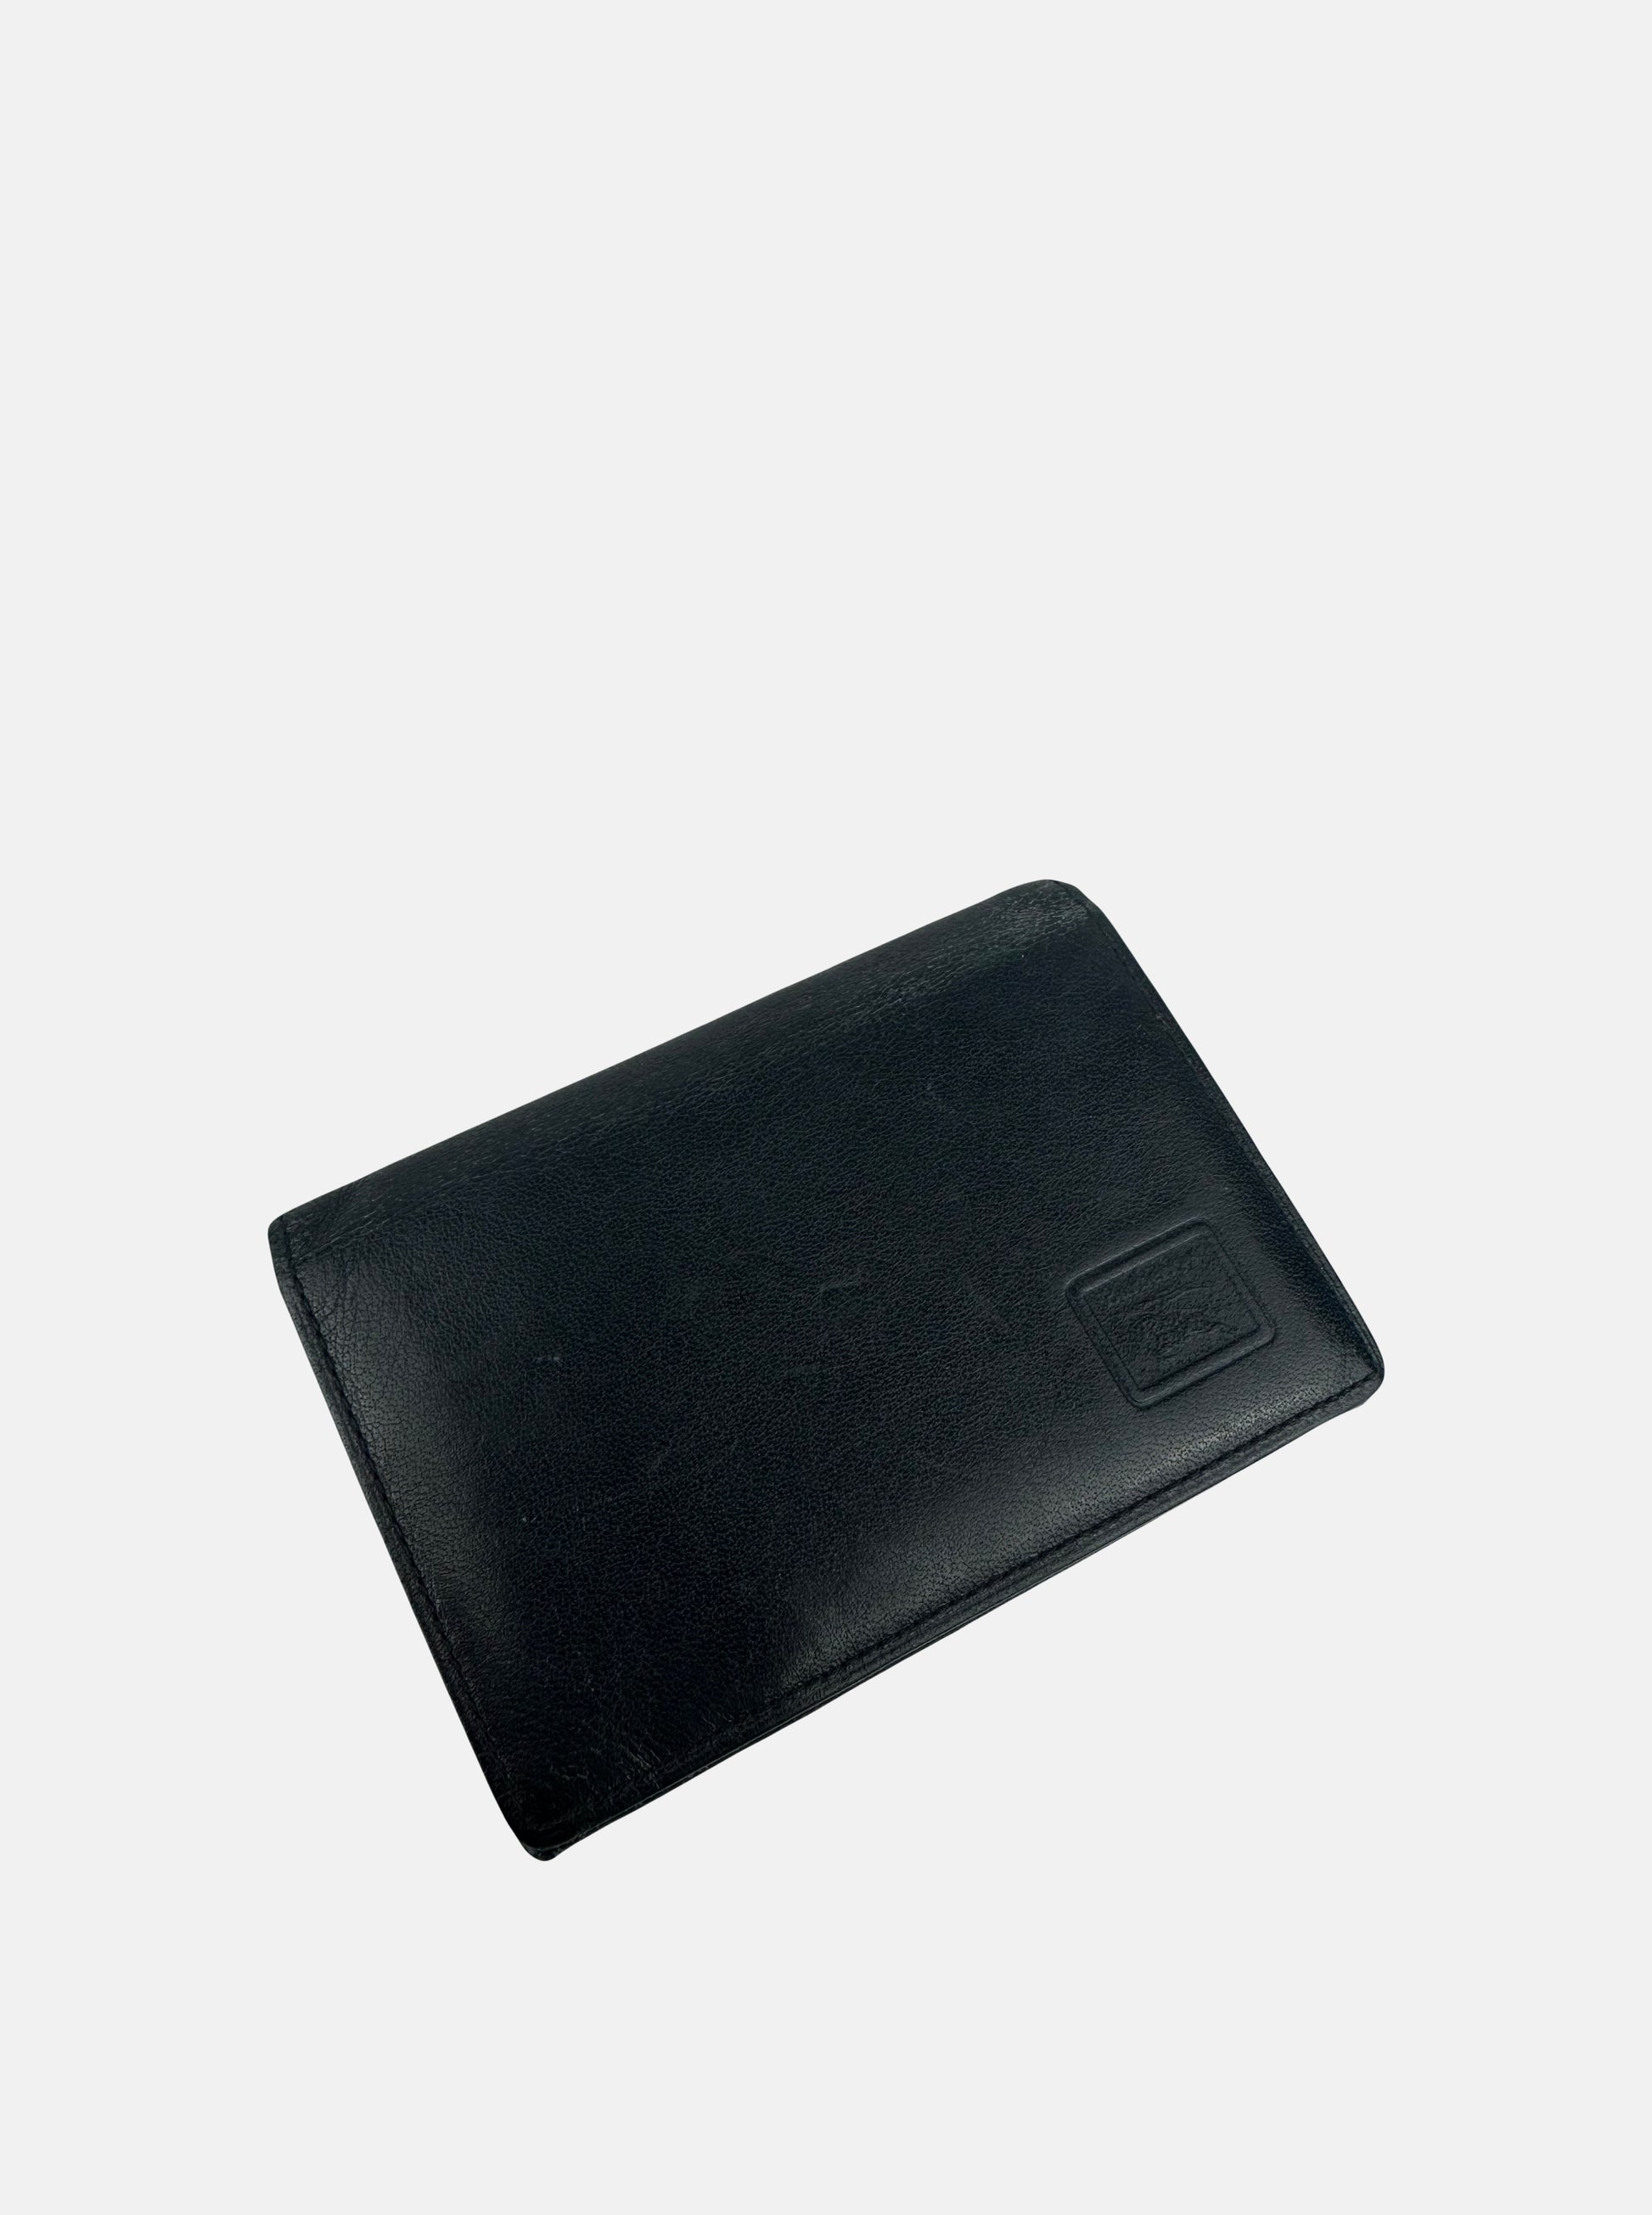 Black Leather Nova Check Pocket Organiser Wallet - Zage Vintage